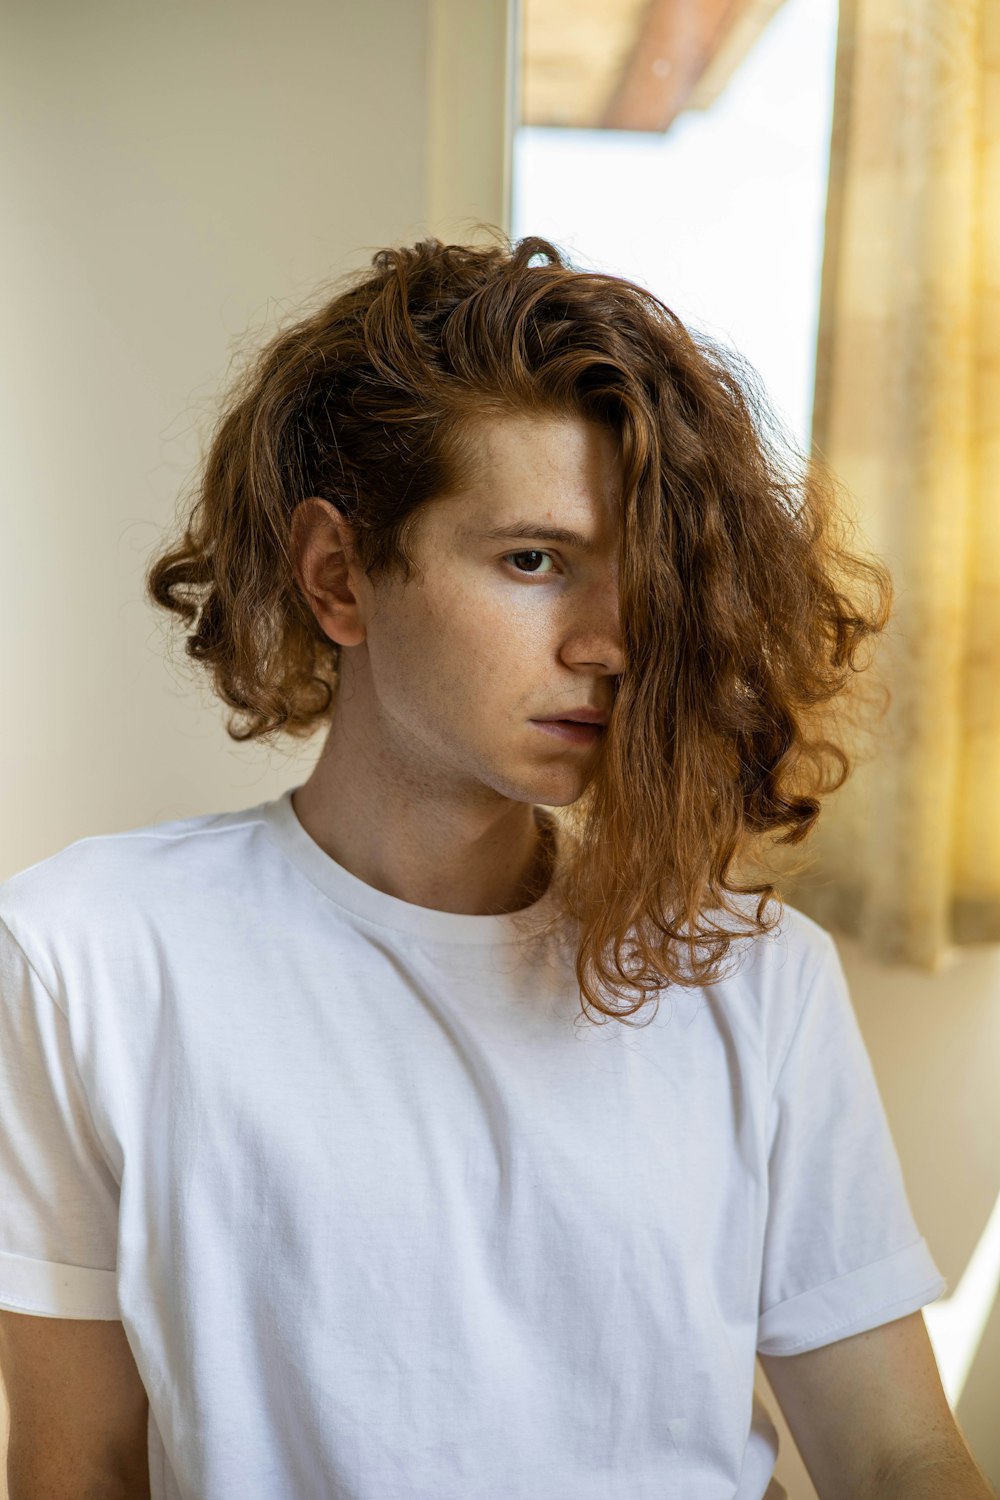 Un giovane con i capelli ricci seduto davanti a una finestra